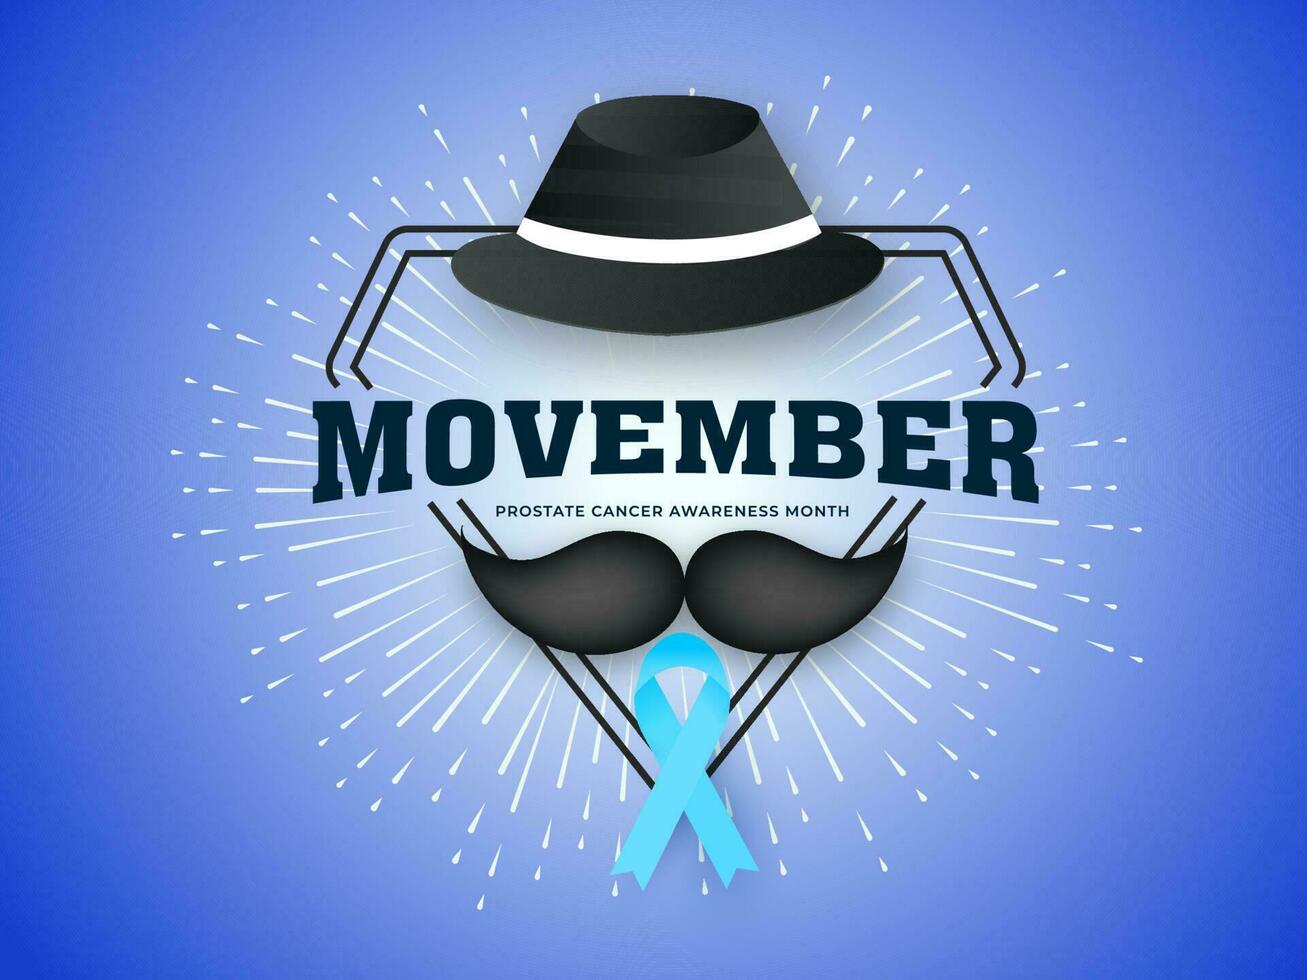 Movember baner eller affisch design med fedora hatt, mustasch och AIDS band illustration på blå strålar bakgrund för prostata cancer medvetenhet månad begrepp. vektor